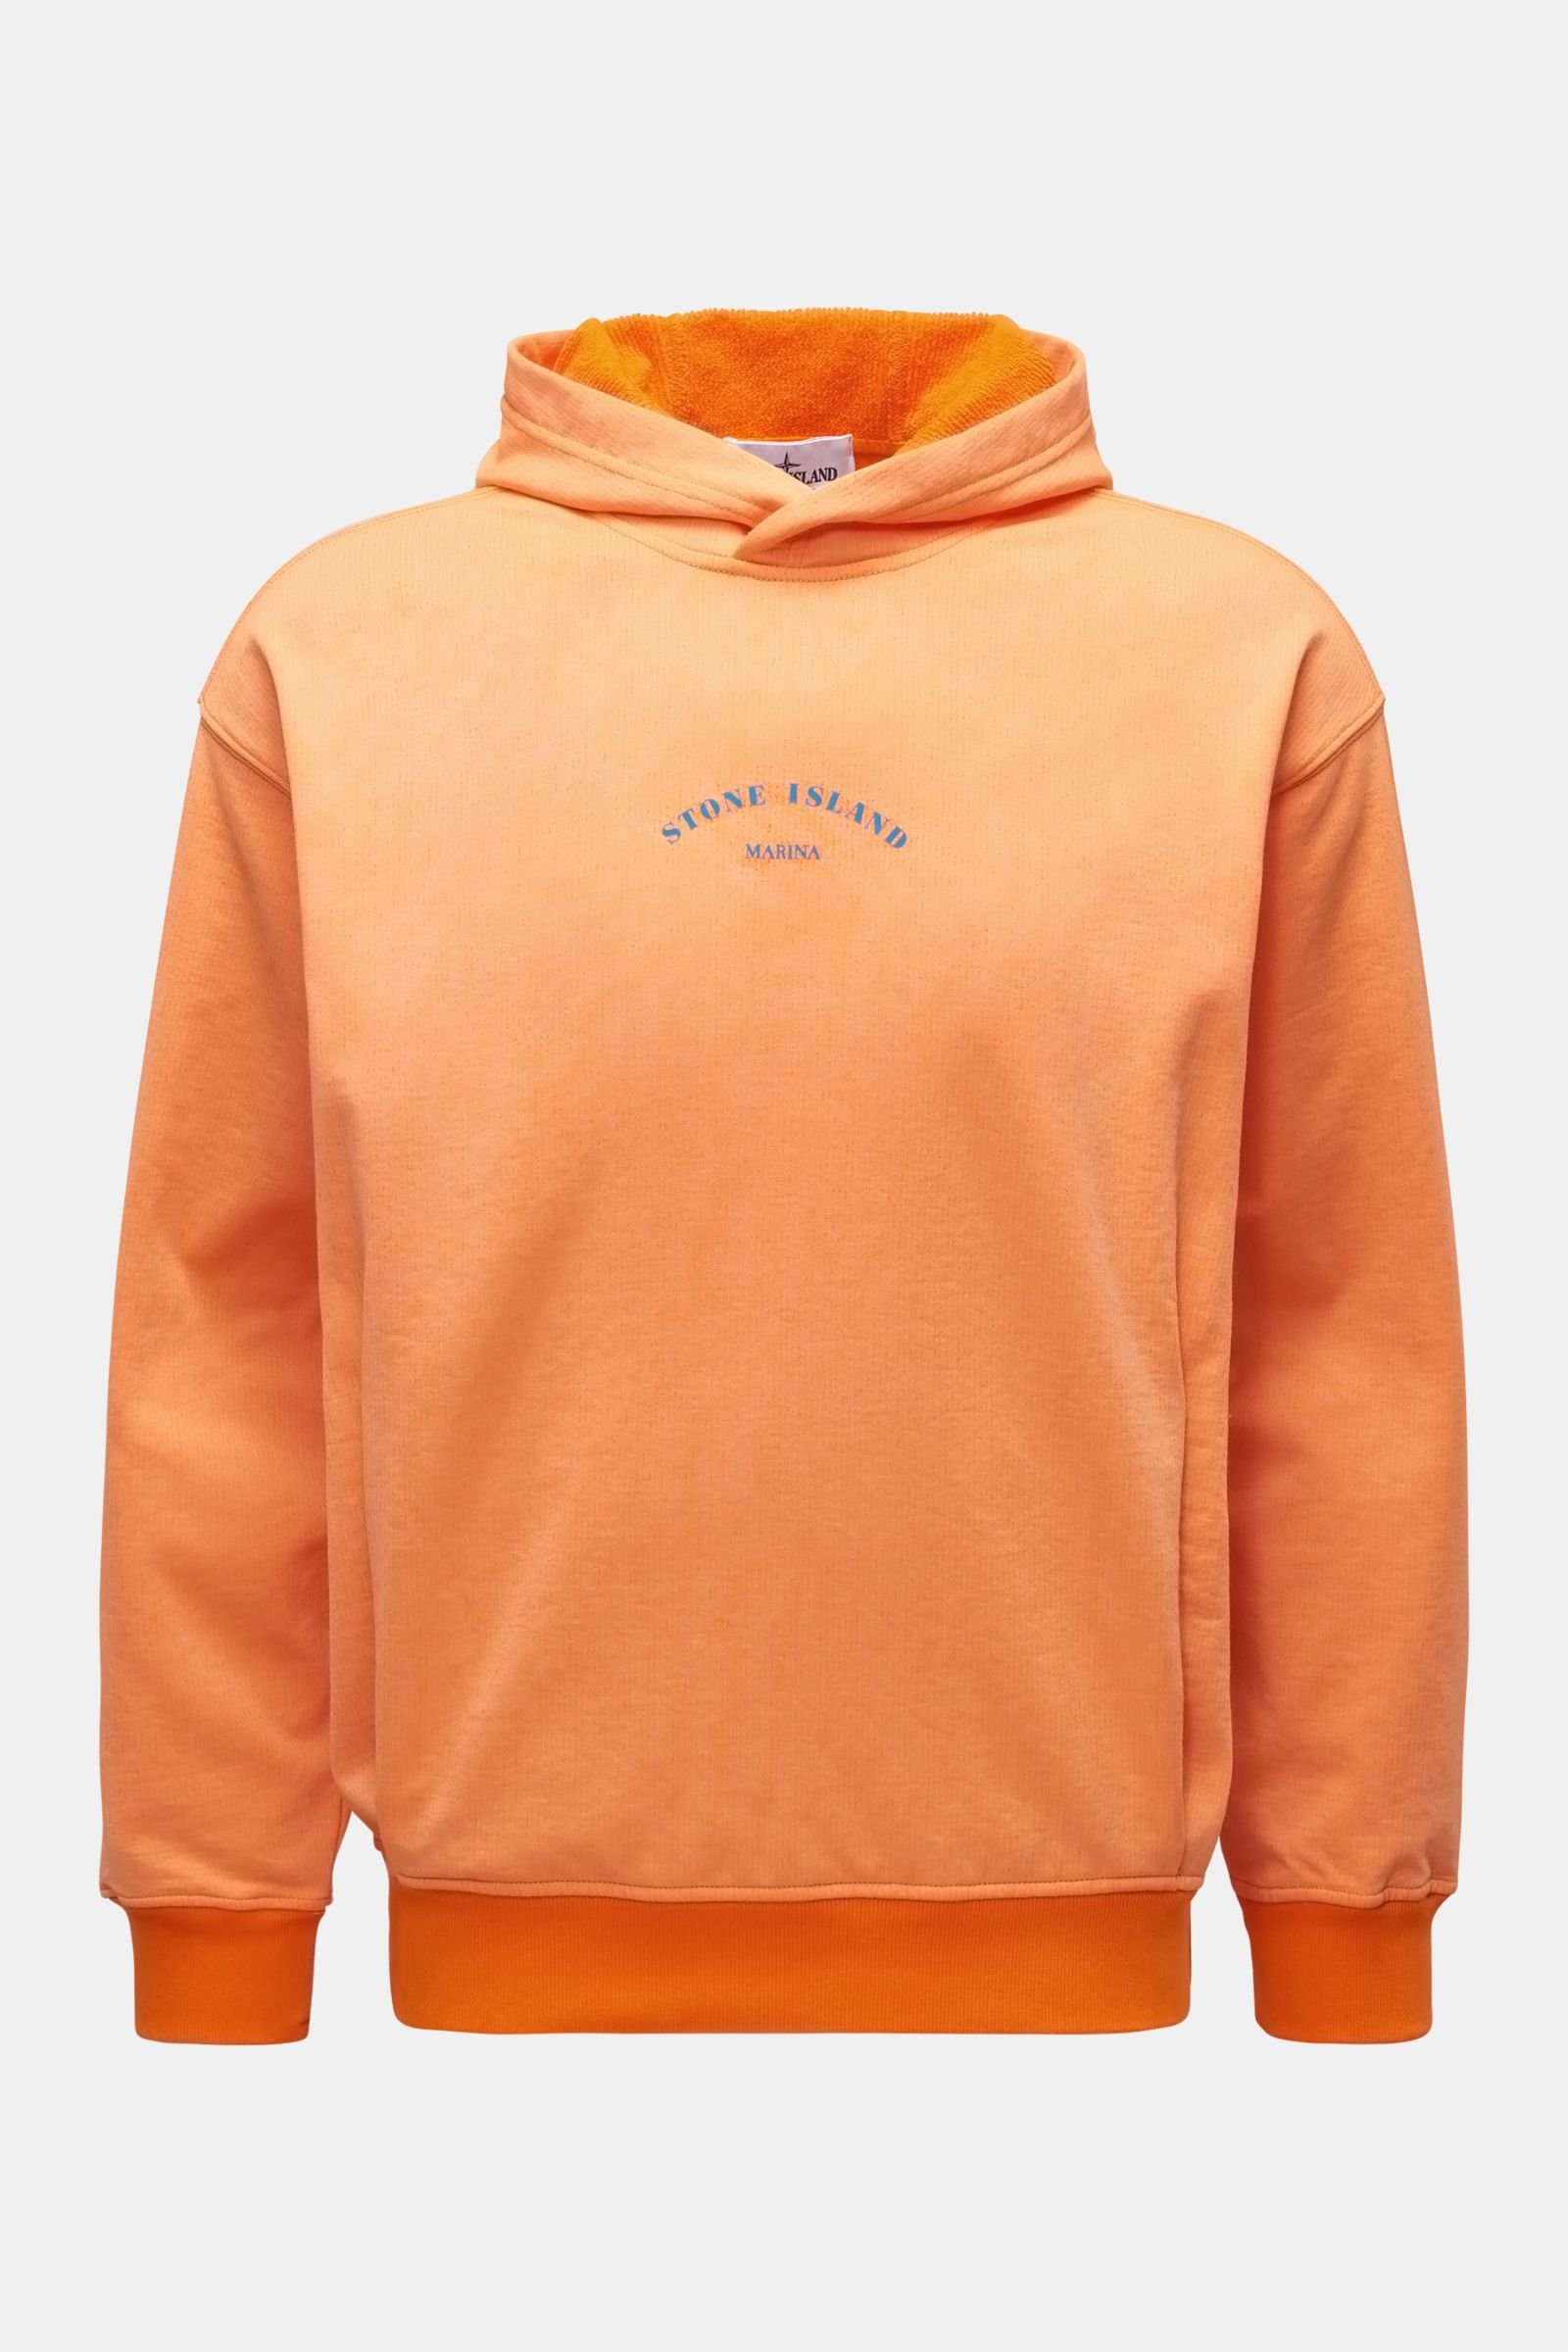 Hooded jumper 'Marina' orange